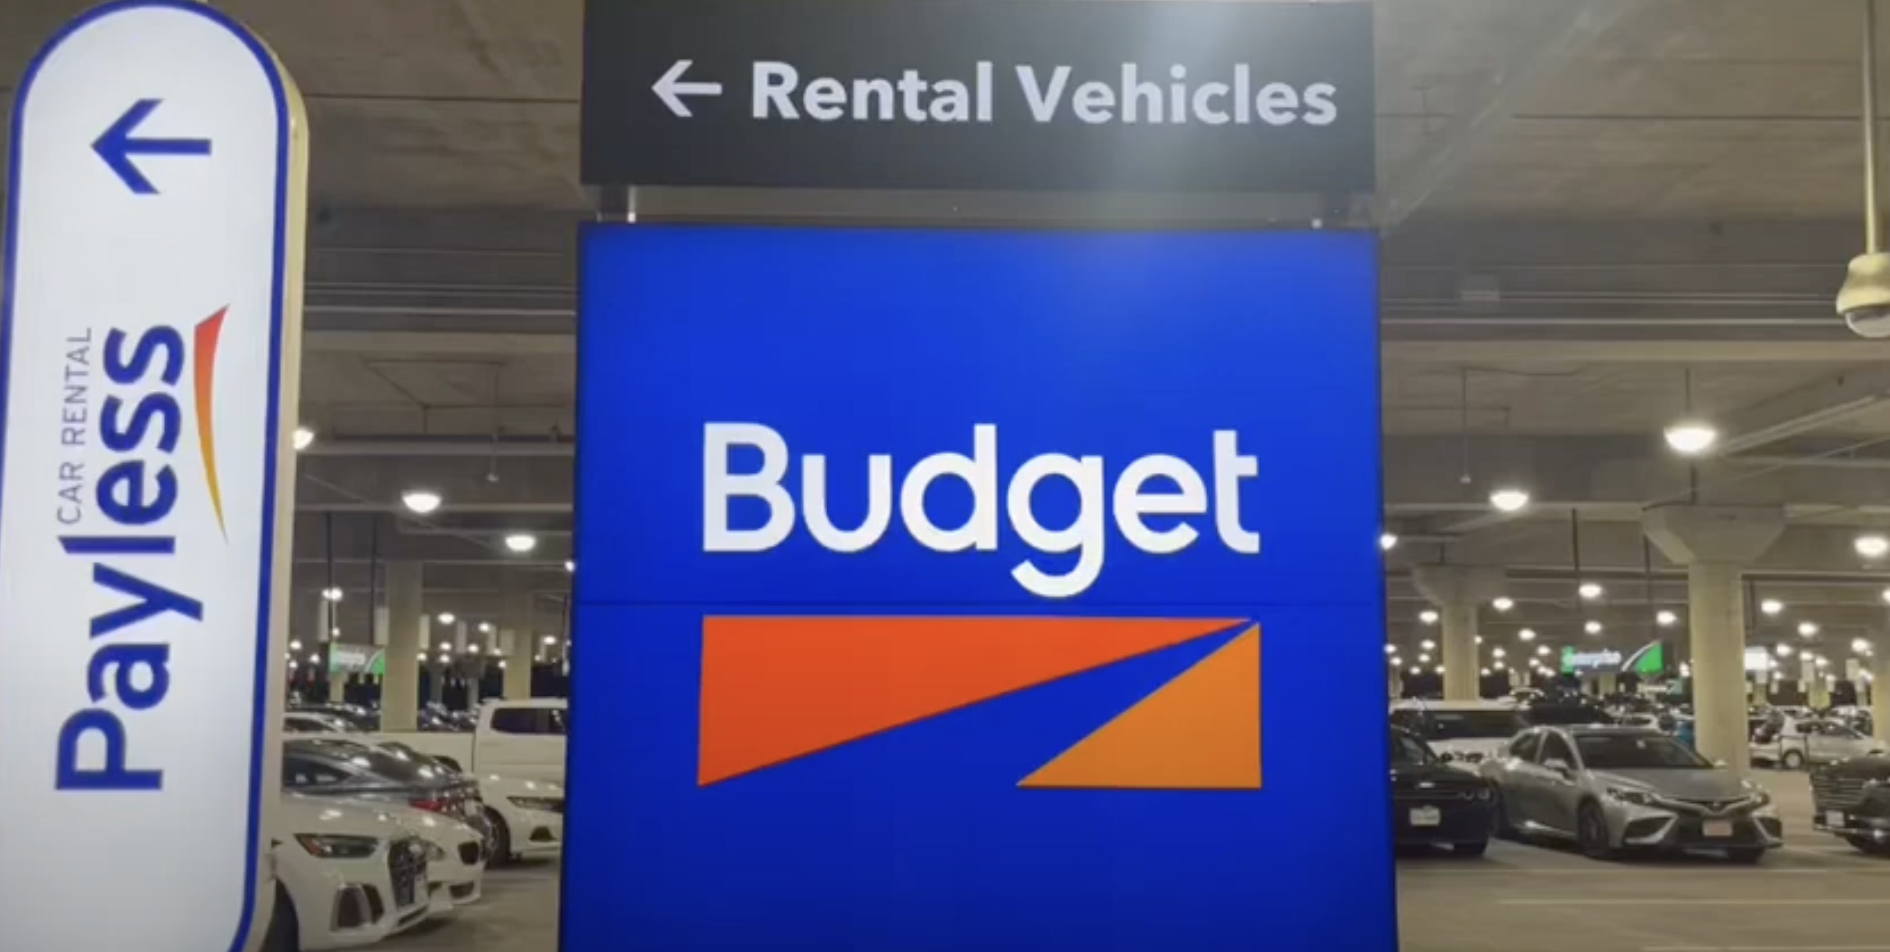 budget rental car-rental ve...